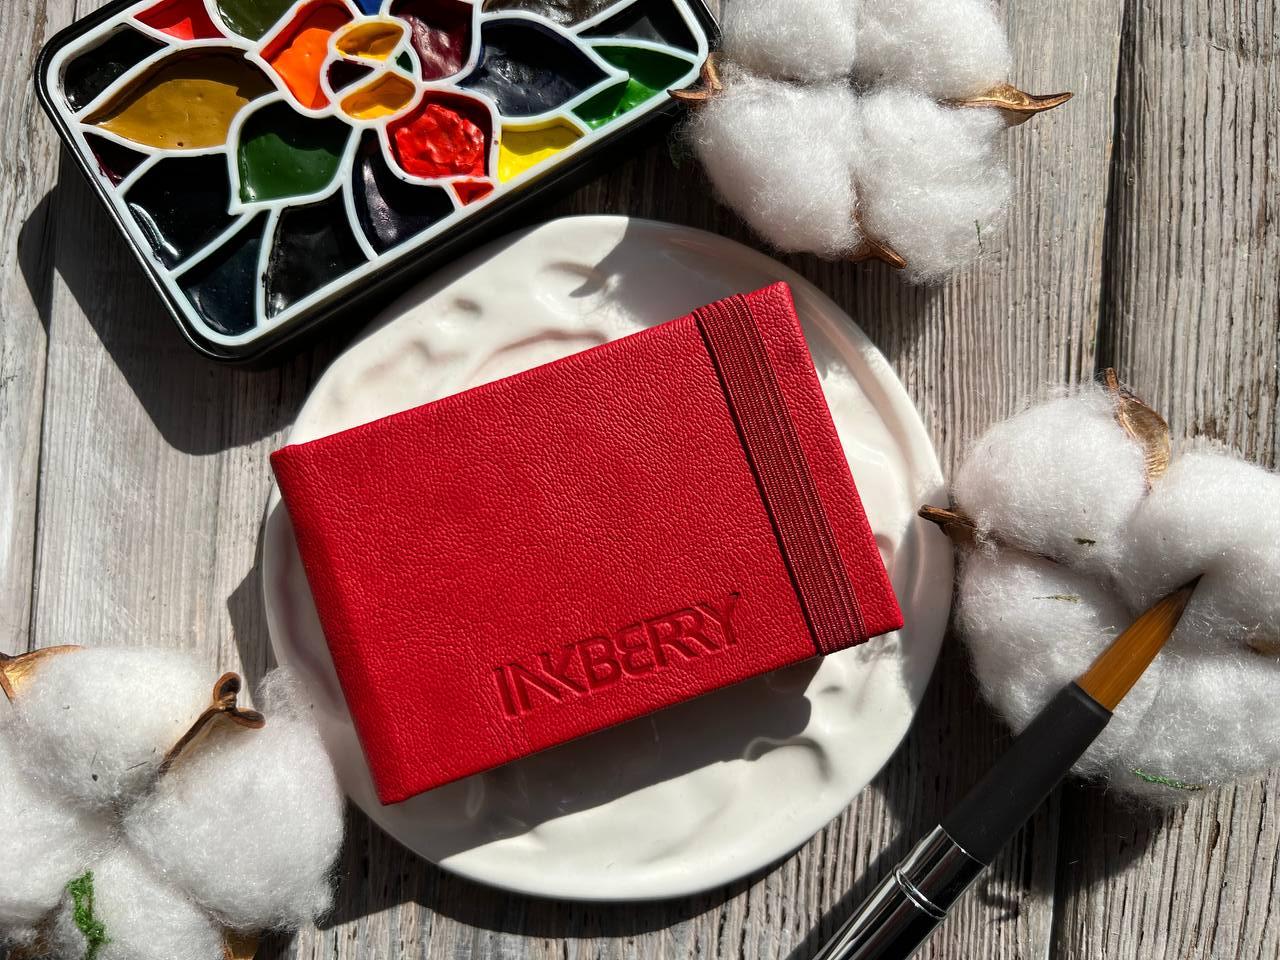 Скетчбук для акварели Inkberry 5х8 см 230 г 50% хлопка, красный скетчбук для для маркеров и графики inkberry 10х10 см 48 л 150 г натурально белая бумага розовый